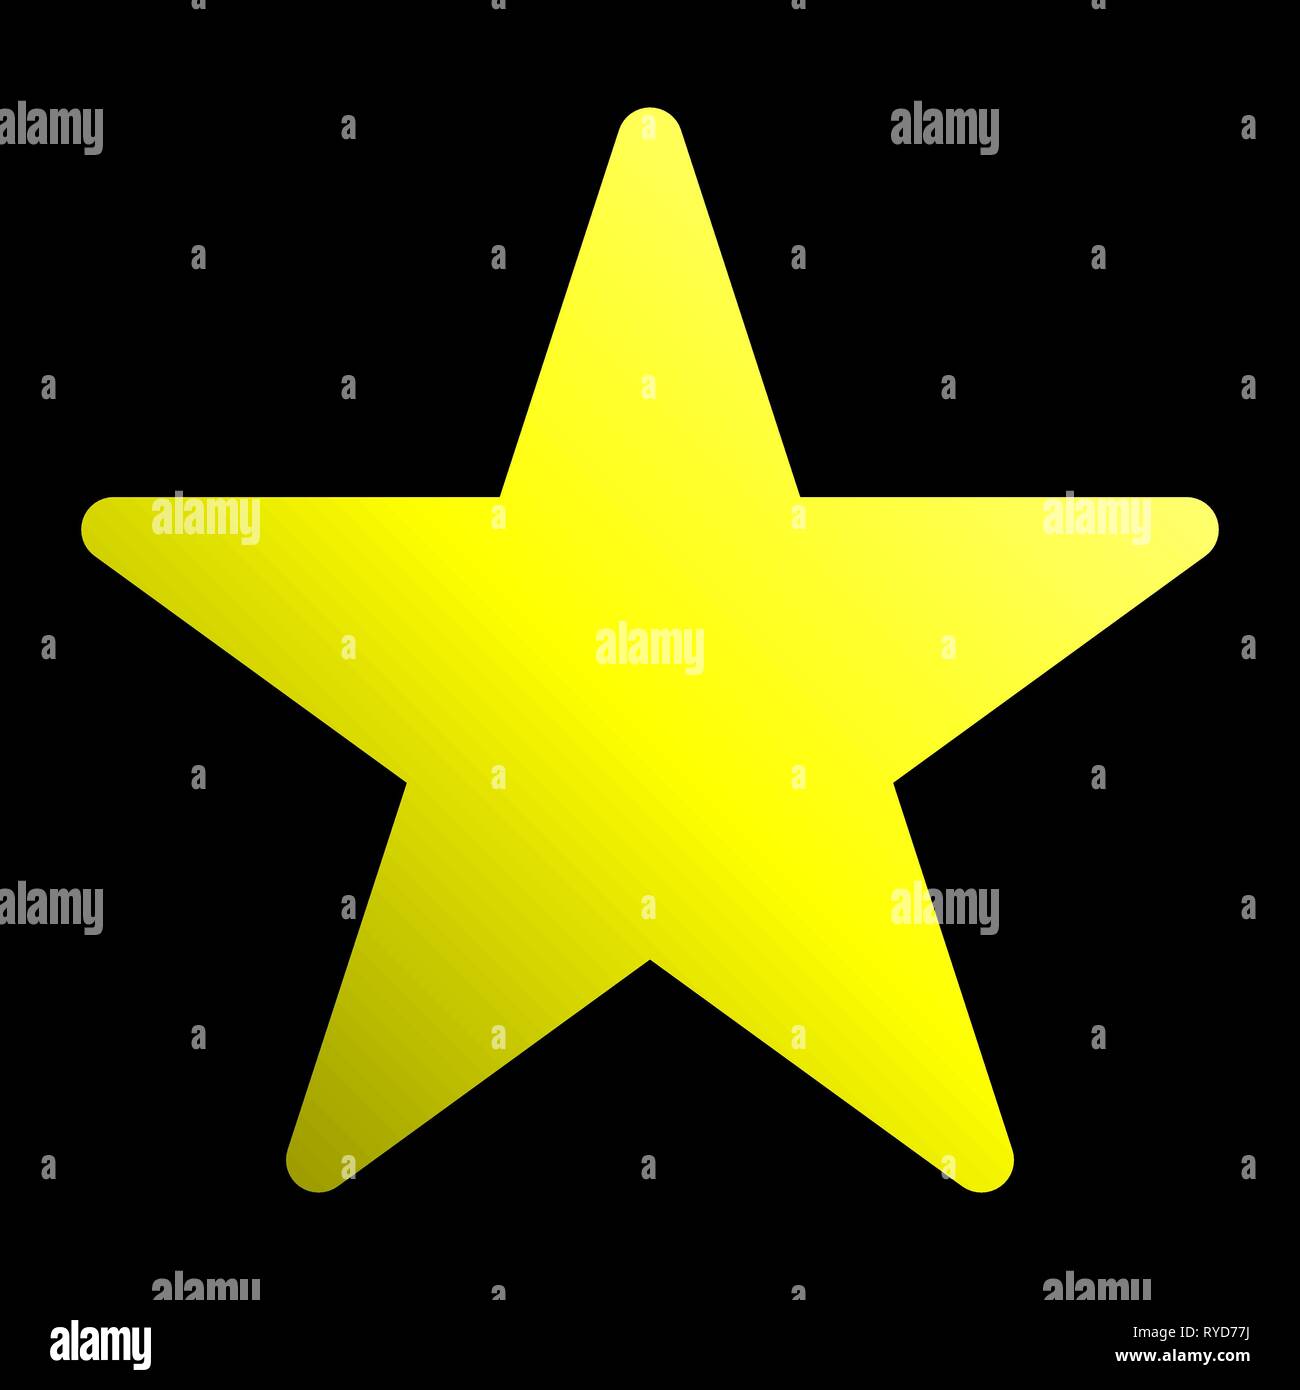 Stella simbolo icona - gradiente di colore giallo, 5 punte arrotondate, isolato - illustrazione vettoriale Illustrazione Vettoriale